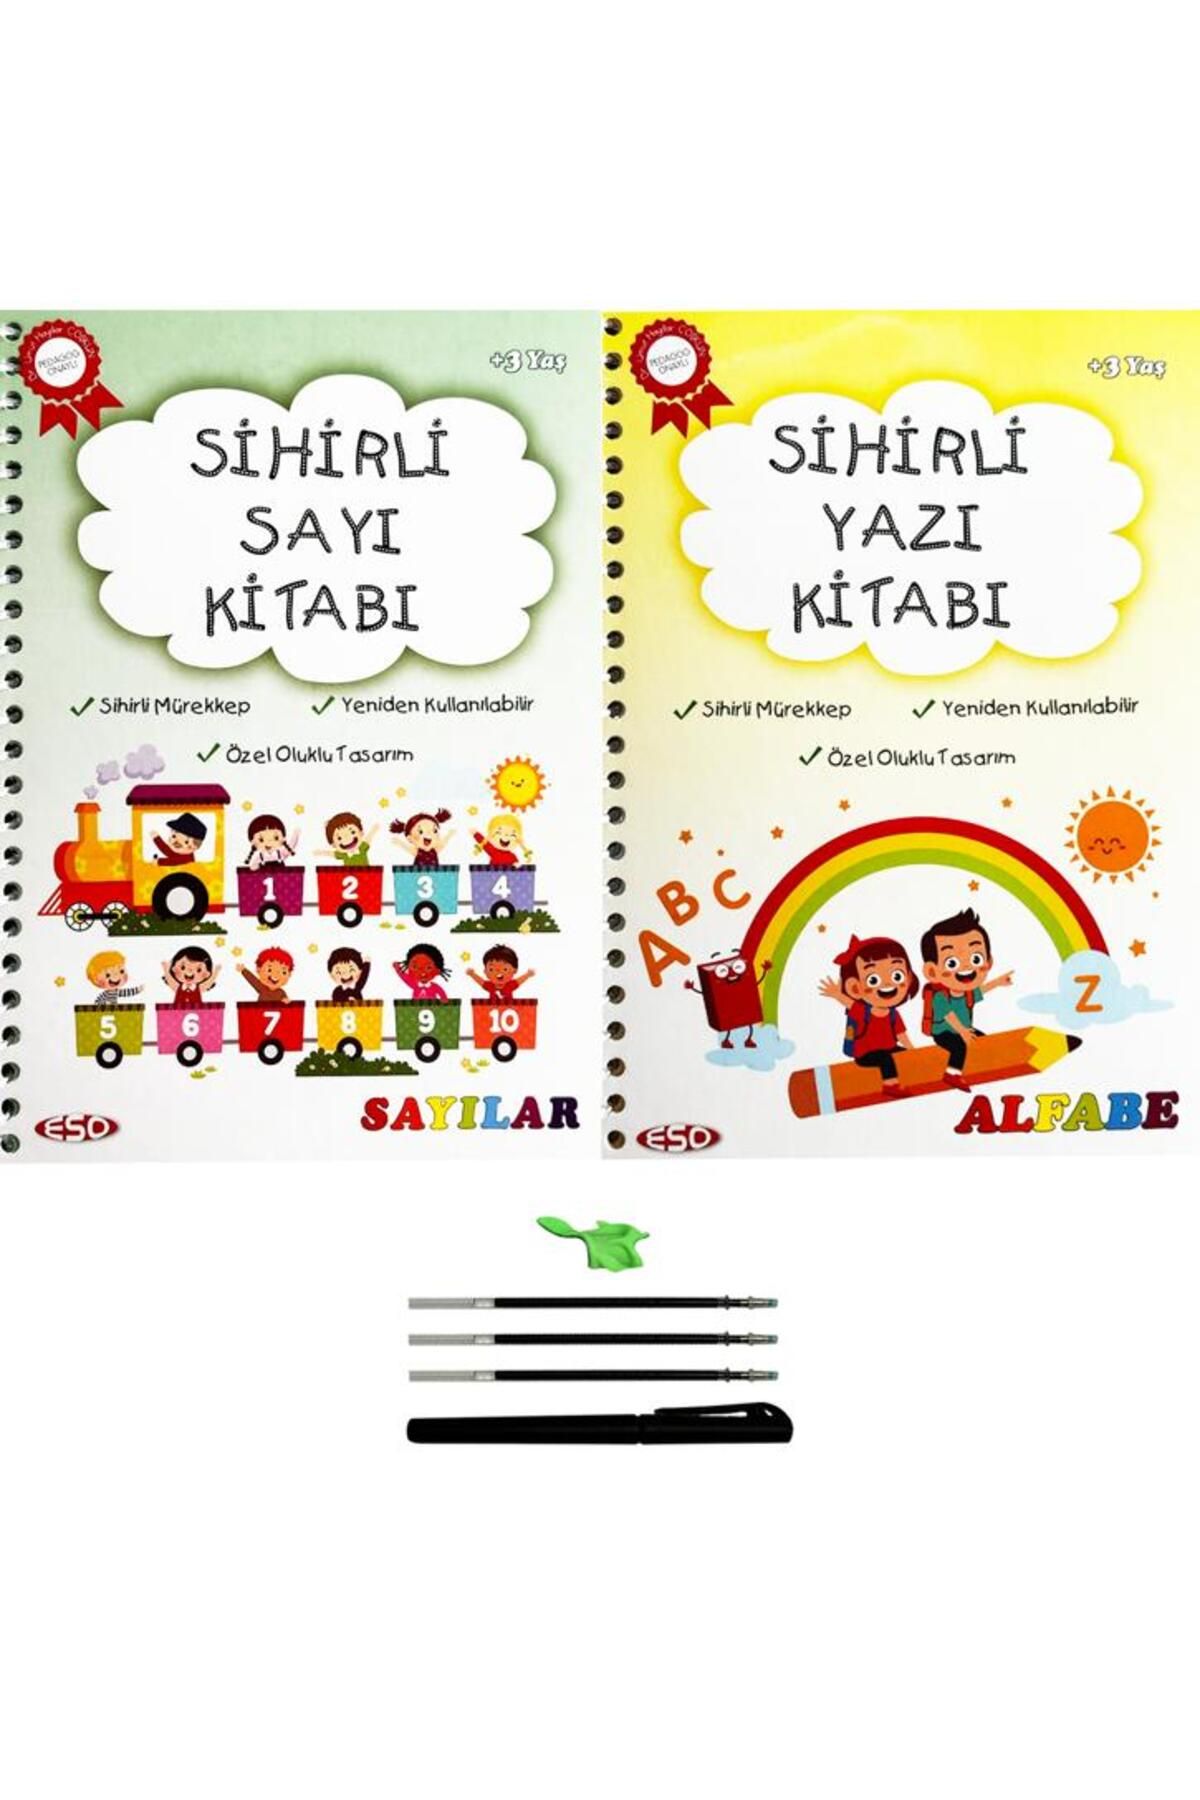 ESOKAL Eso Sihirli Yazı Ve Sayı Kitabı - Eğitici Ve Eğlenceli Aktivite Kitabı - Oluklu- (3-7 Yaş )